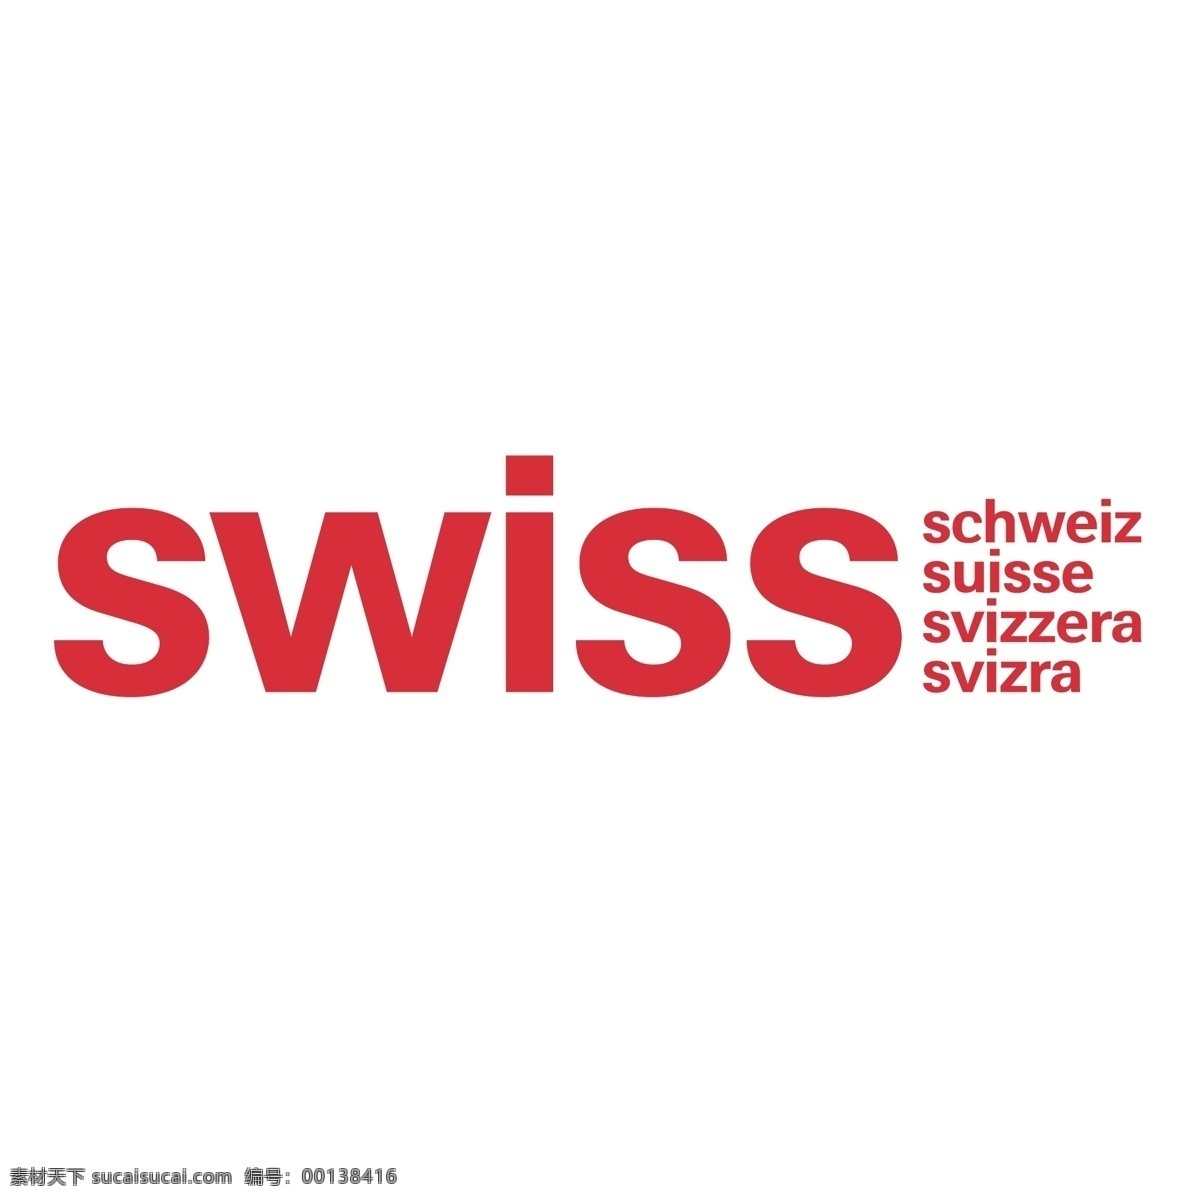 瑞士航空公司 免费 瑞士 航空 标志 标识 psd源文件 logo设计